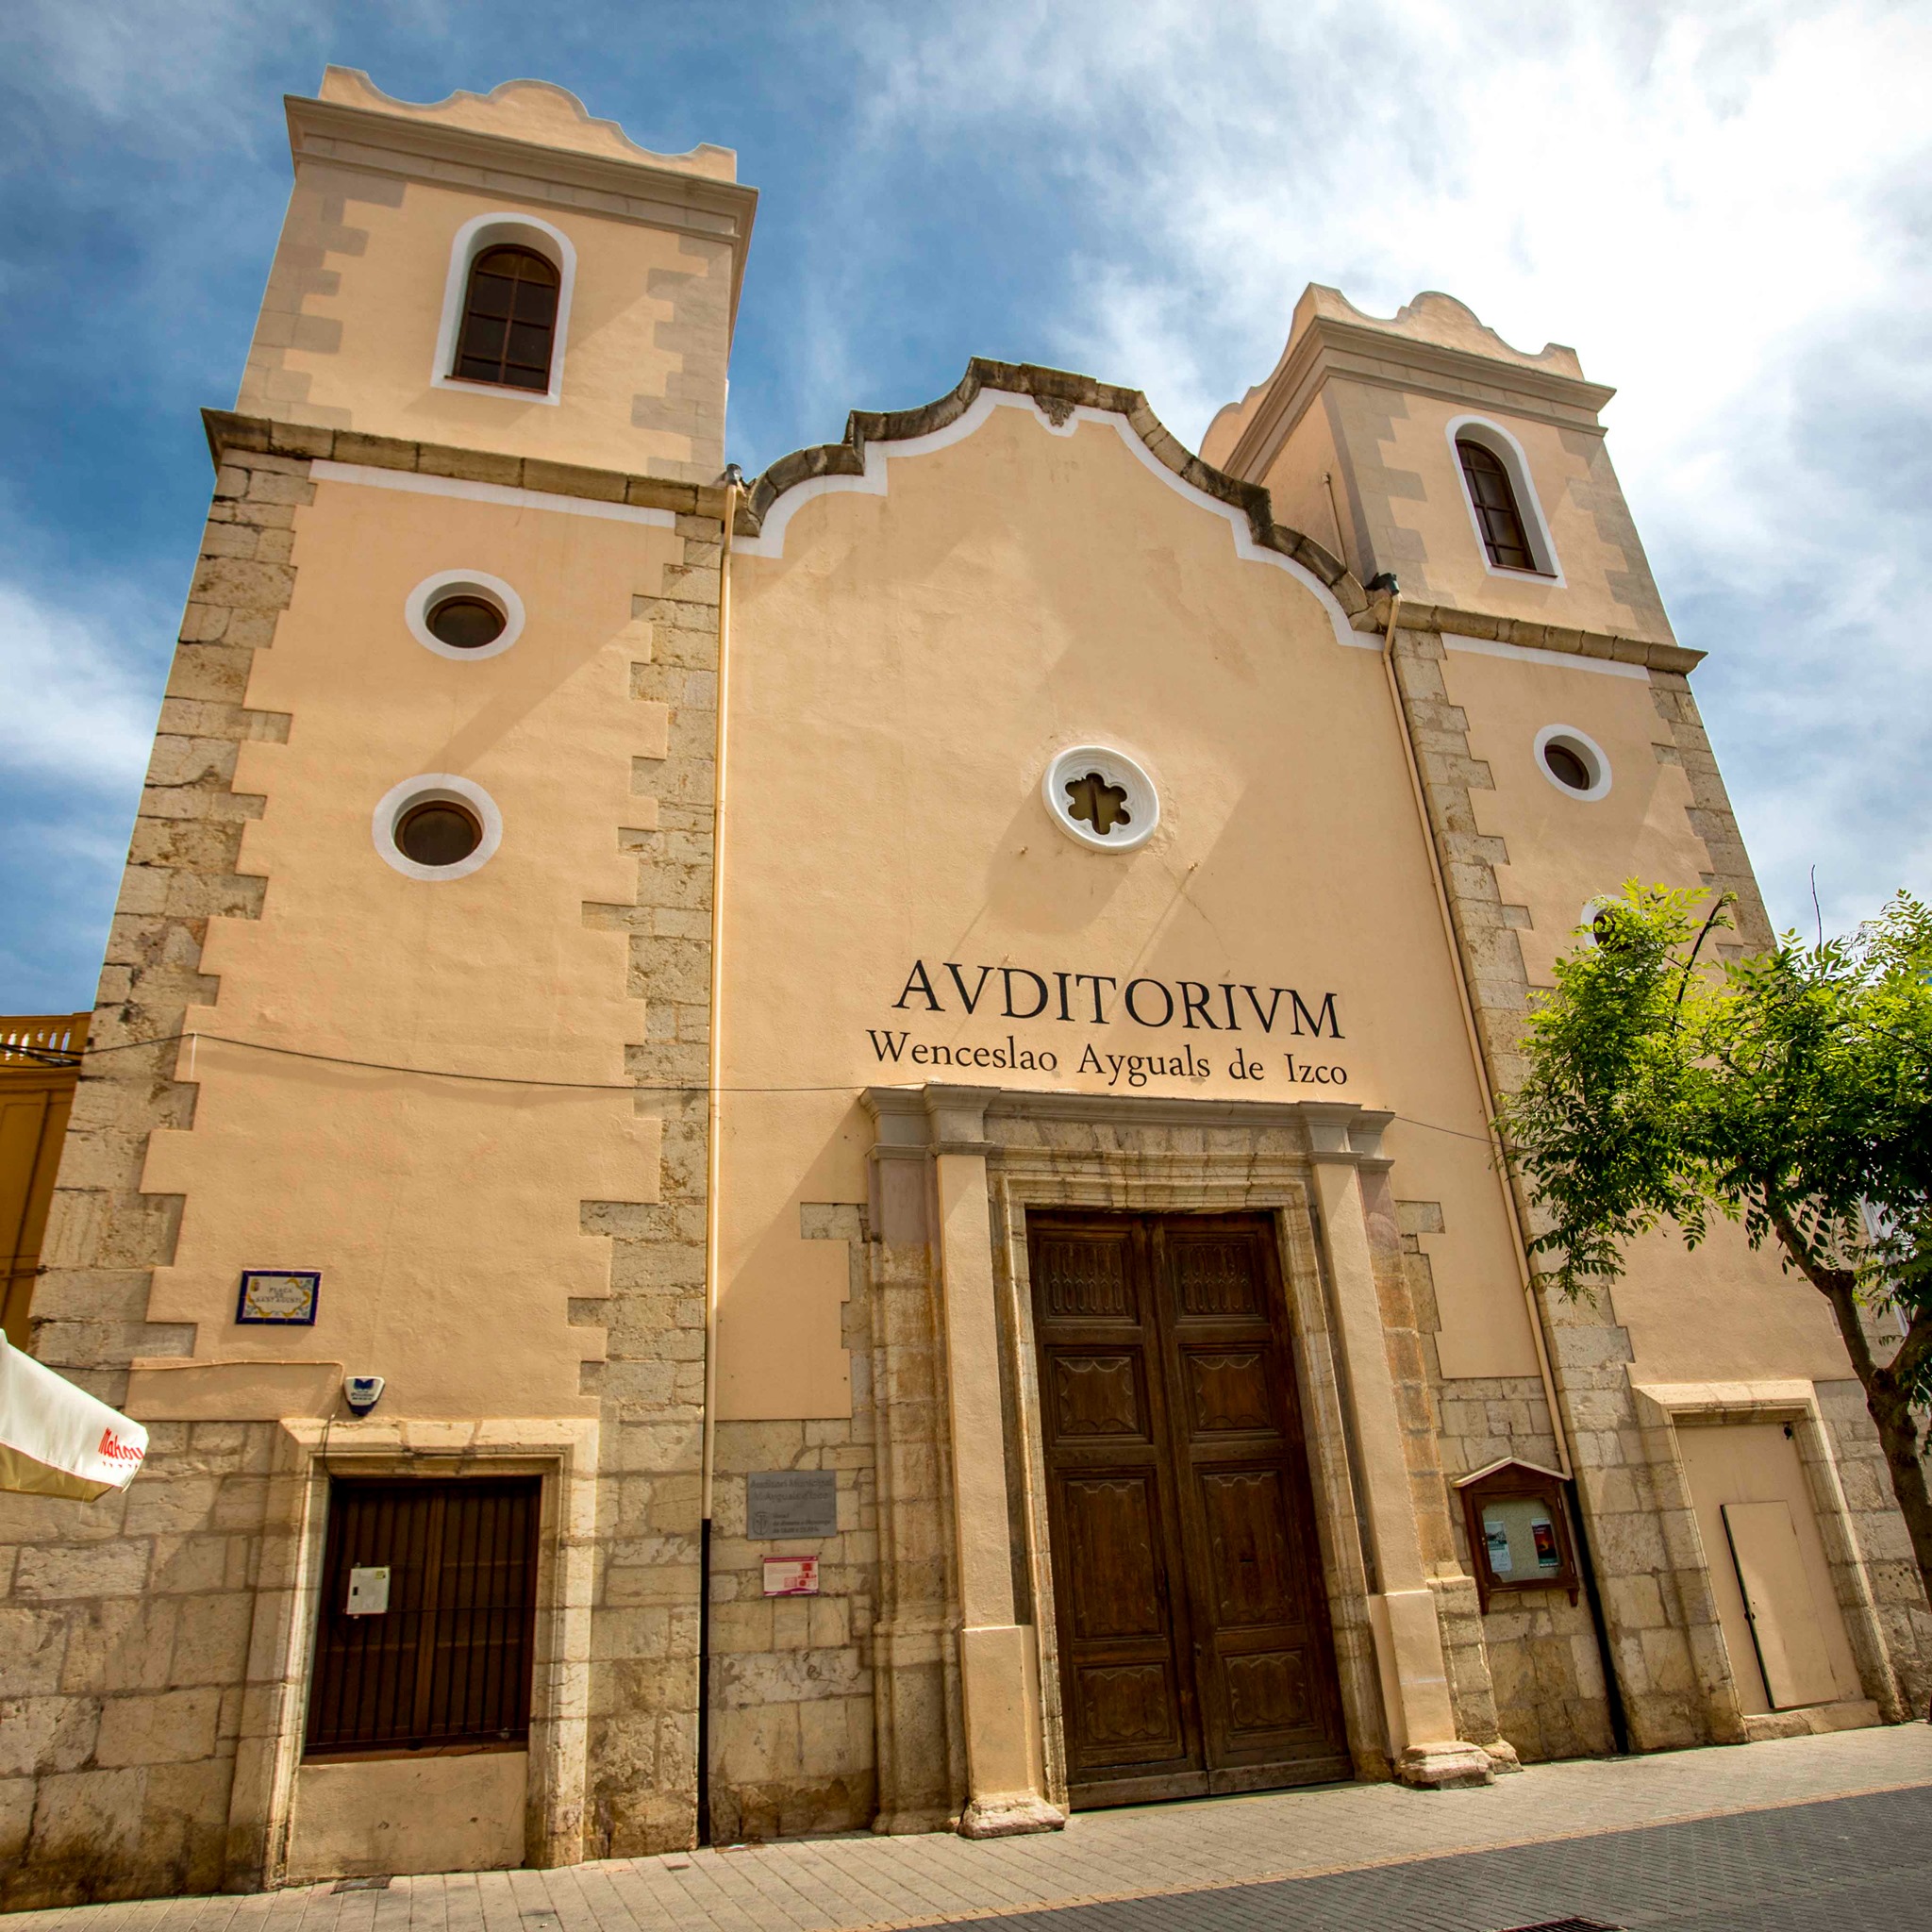 Ancienne Église Paroissiale de San Agustín Obispo (actuel Auditoire Munnicipal)